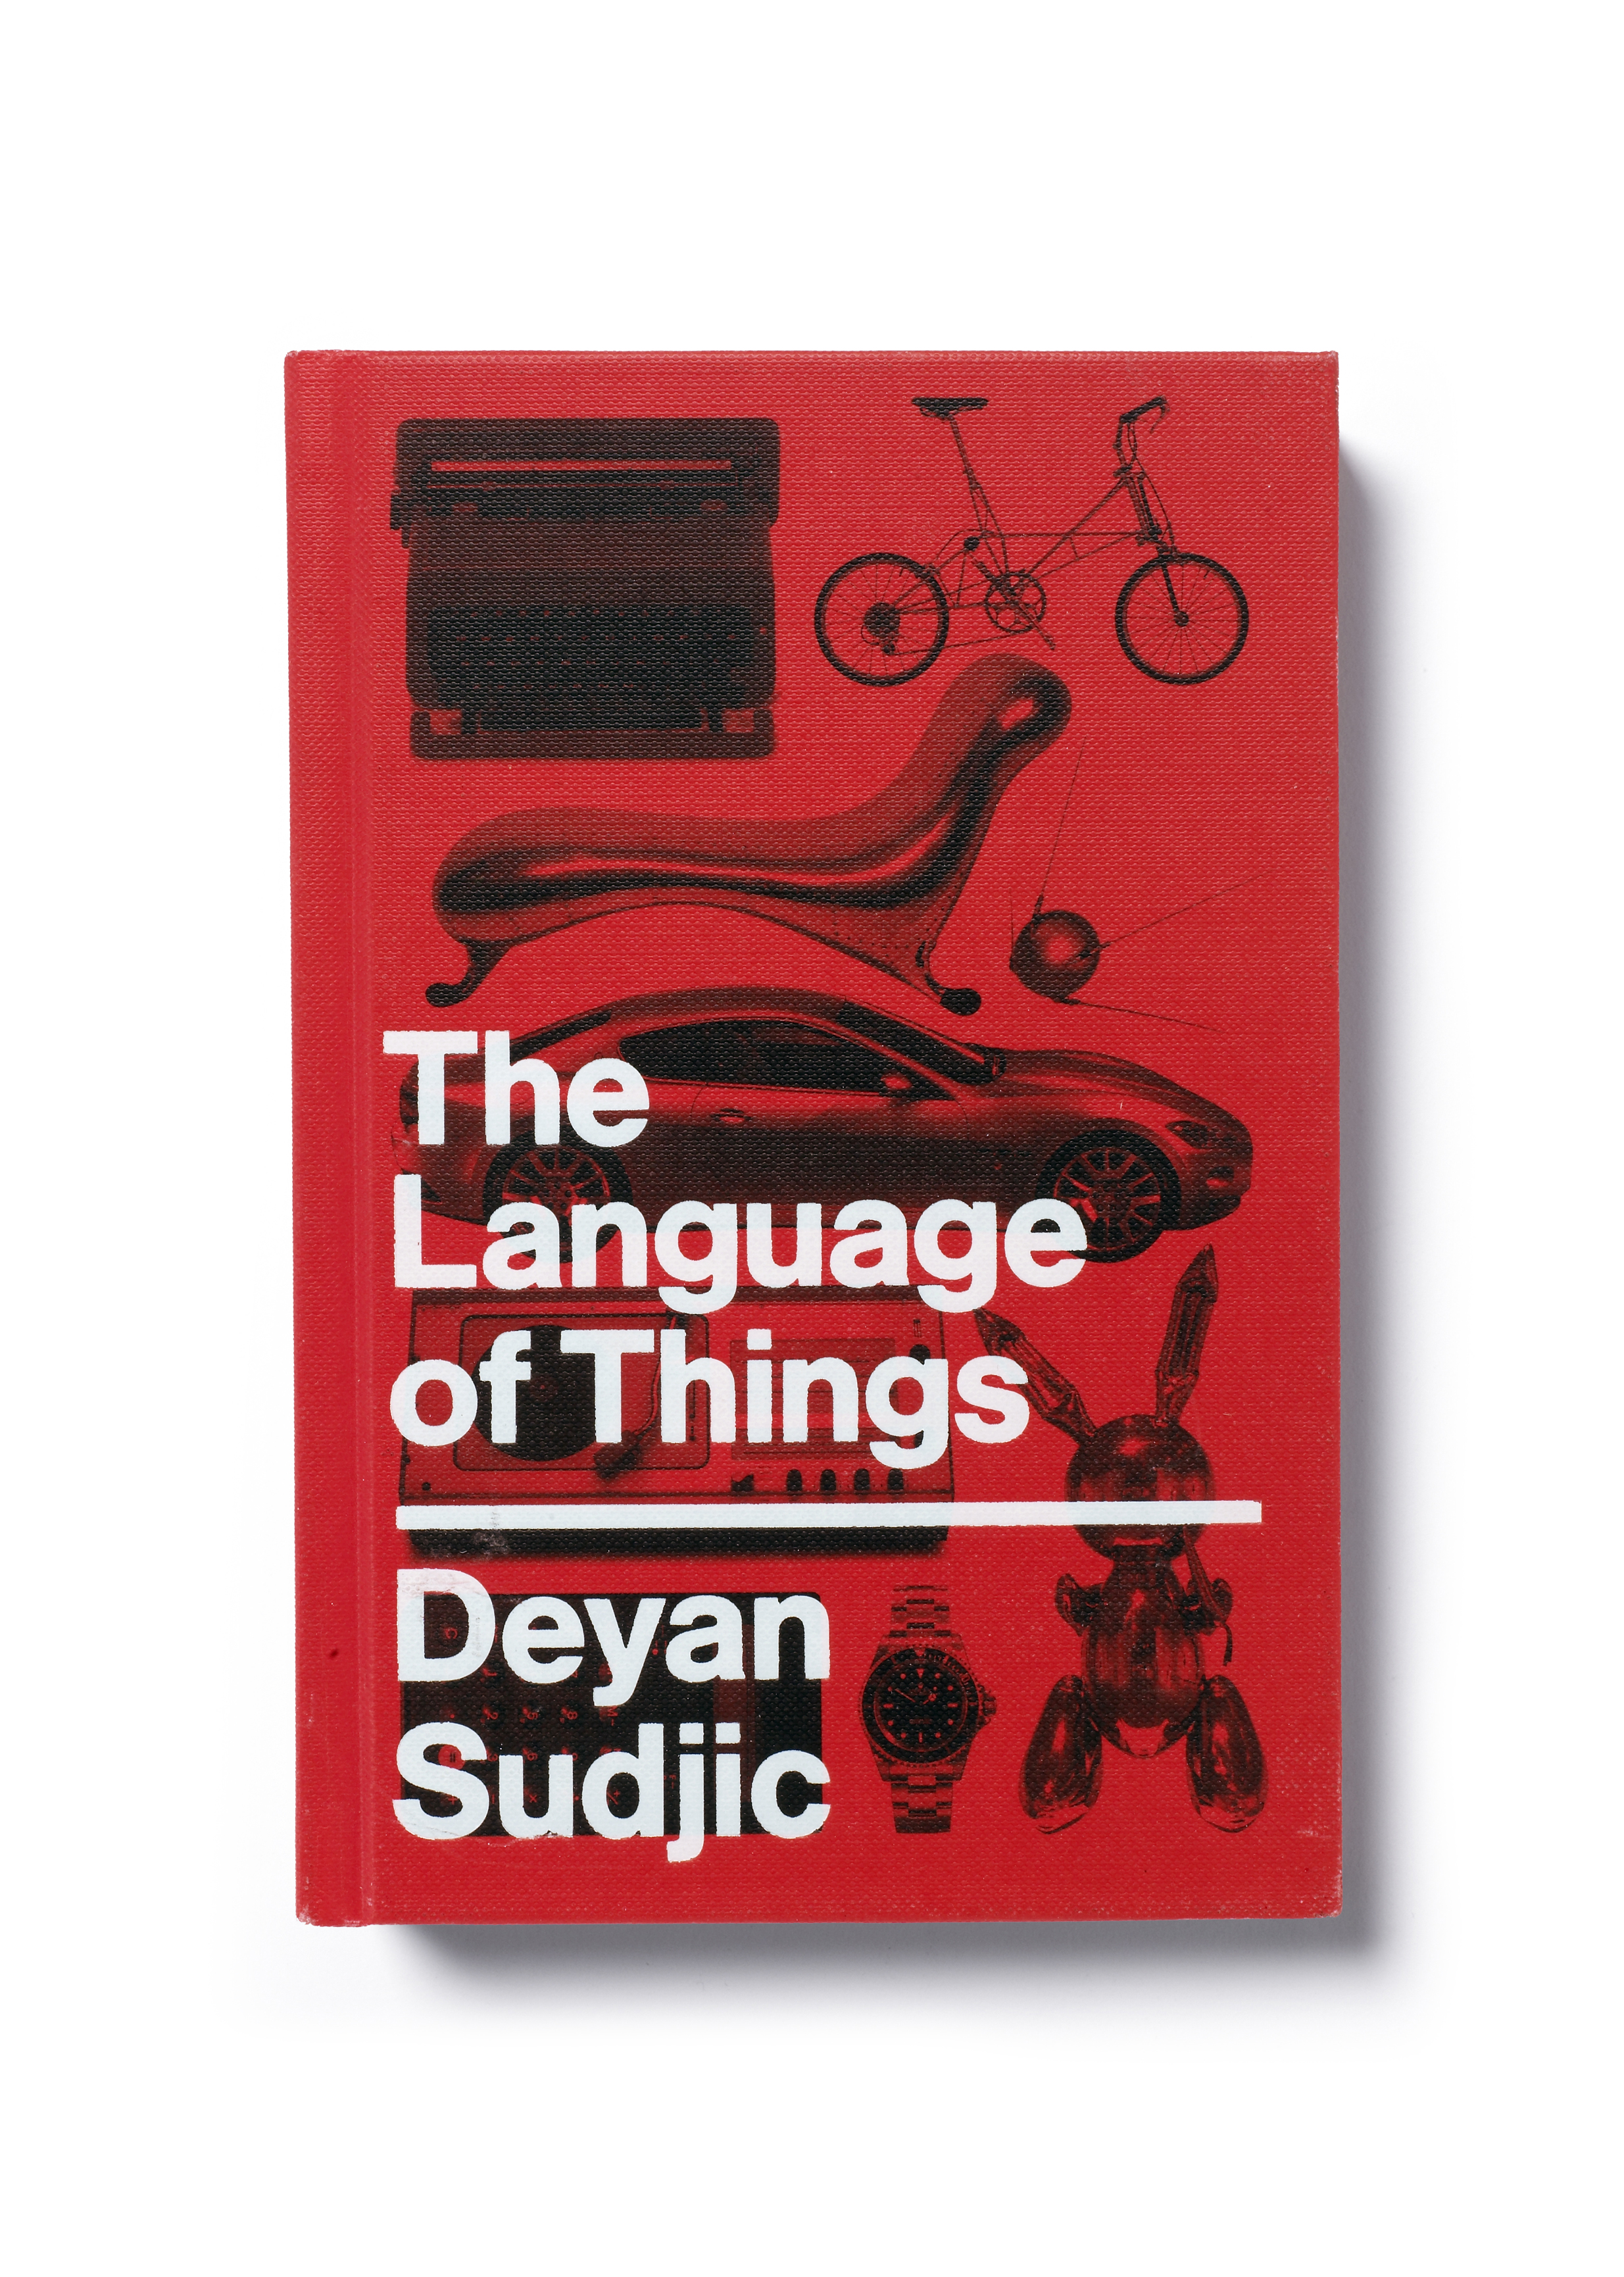  The Language of Things by Deyan Sudjic - Art Direction: Jim Stoddart Design: Yes Studio  &nbsp; 